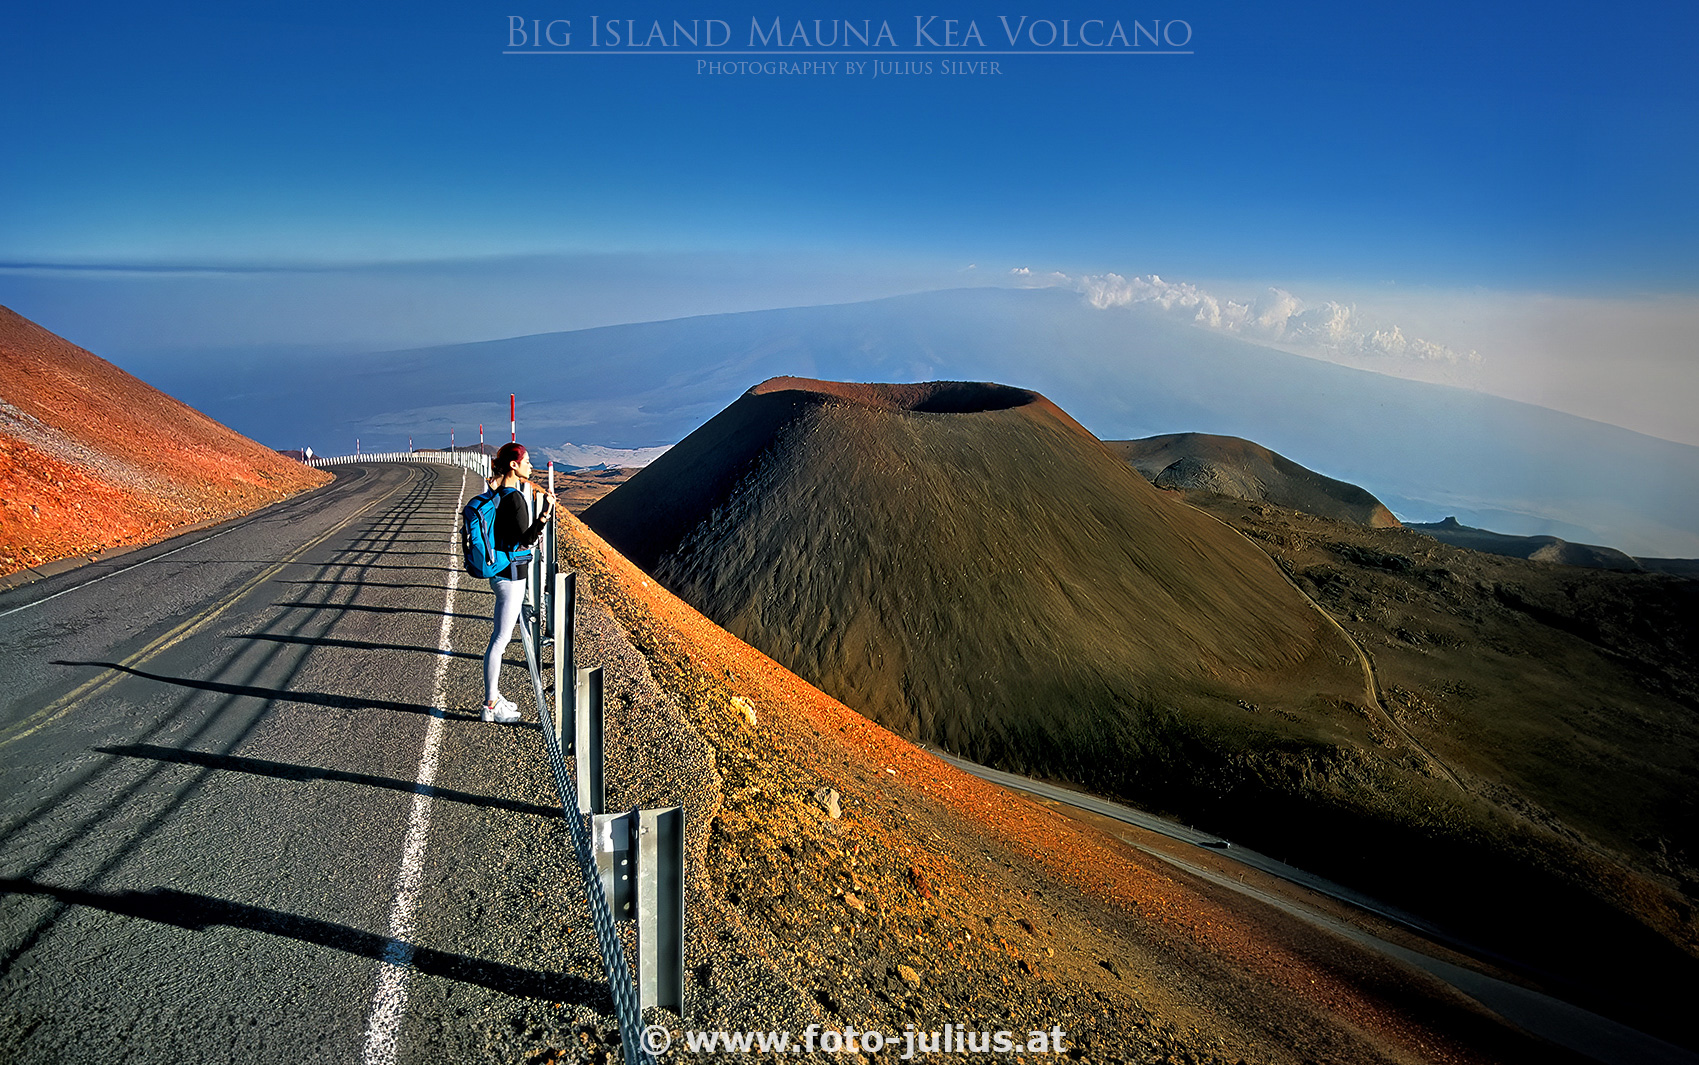 haw009a_Hawaii_Big_Island_Mauna_Kea_Volcano.jpg, 935kB